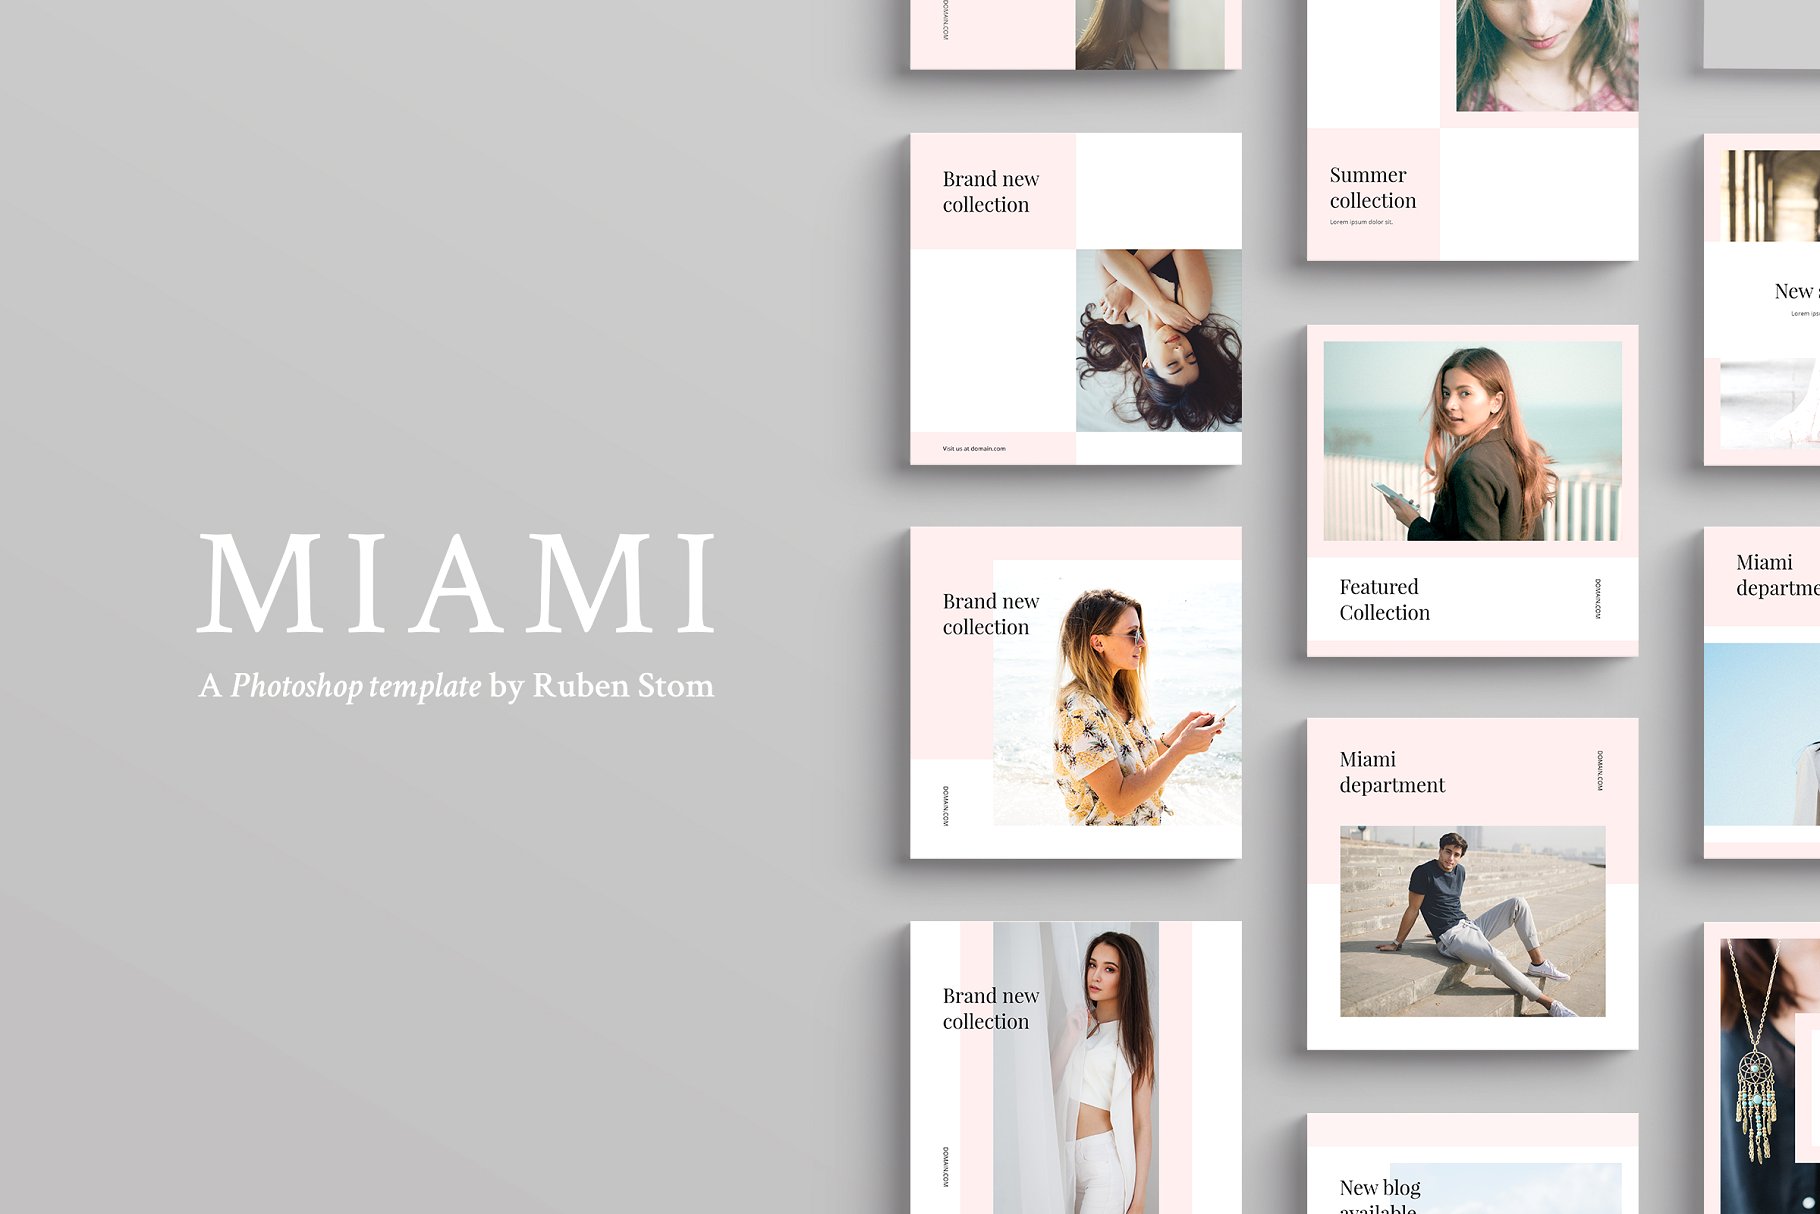 适合多个社交媒体平台的插图配图设计模板素材中国精选 Miami Social Media Templates插图